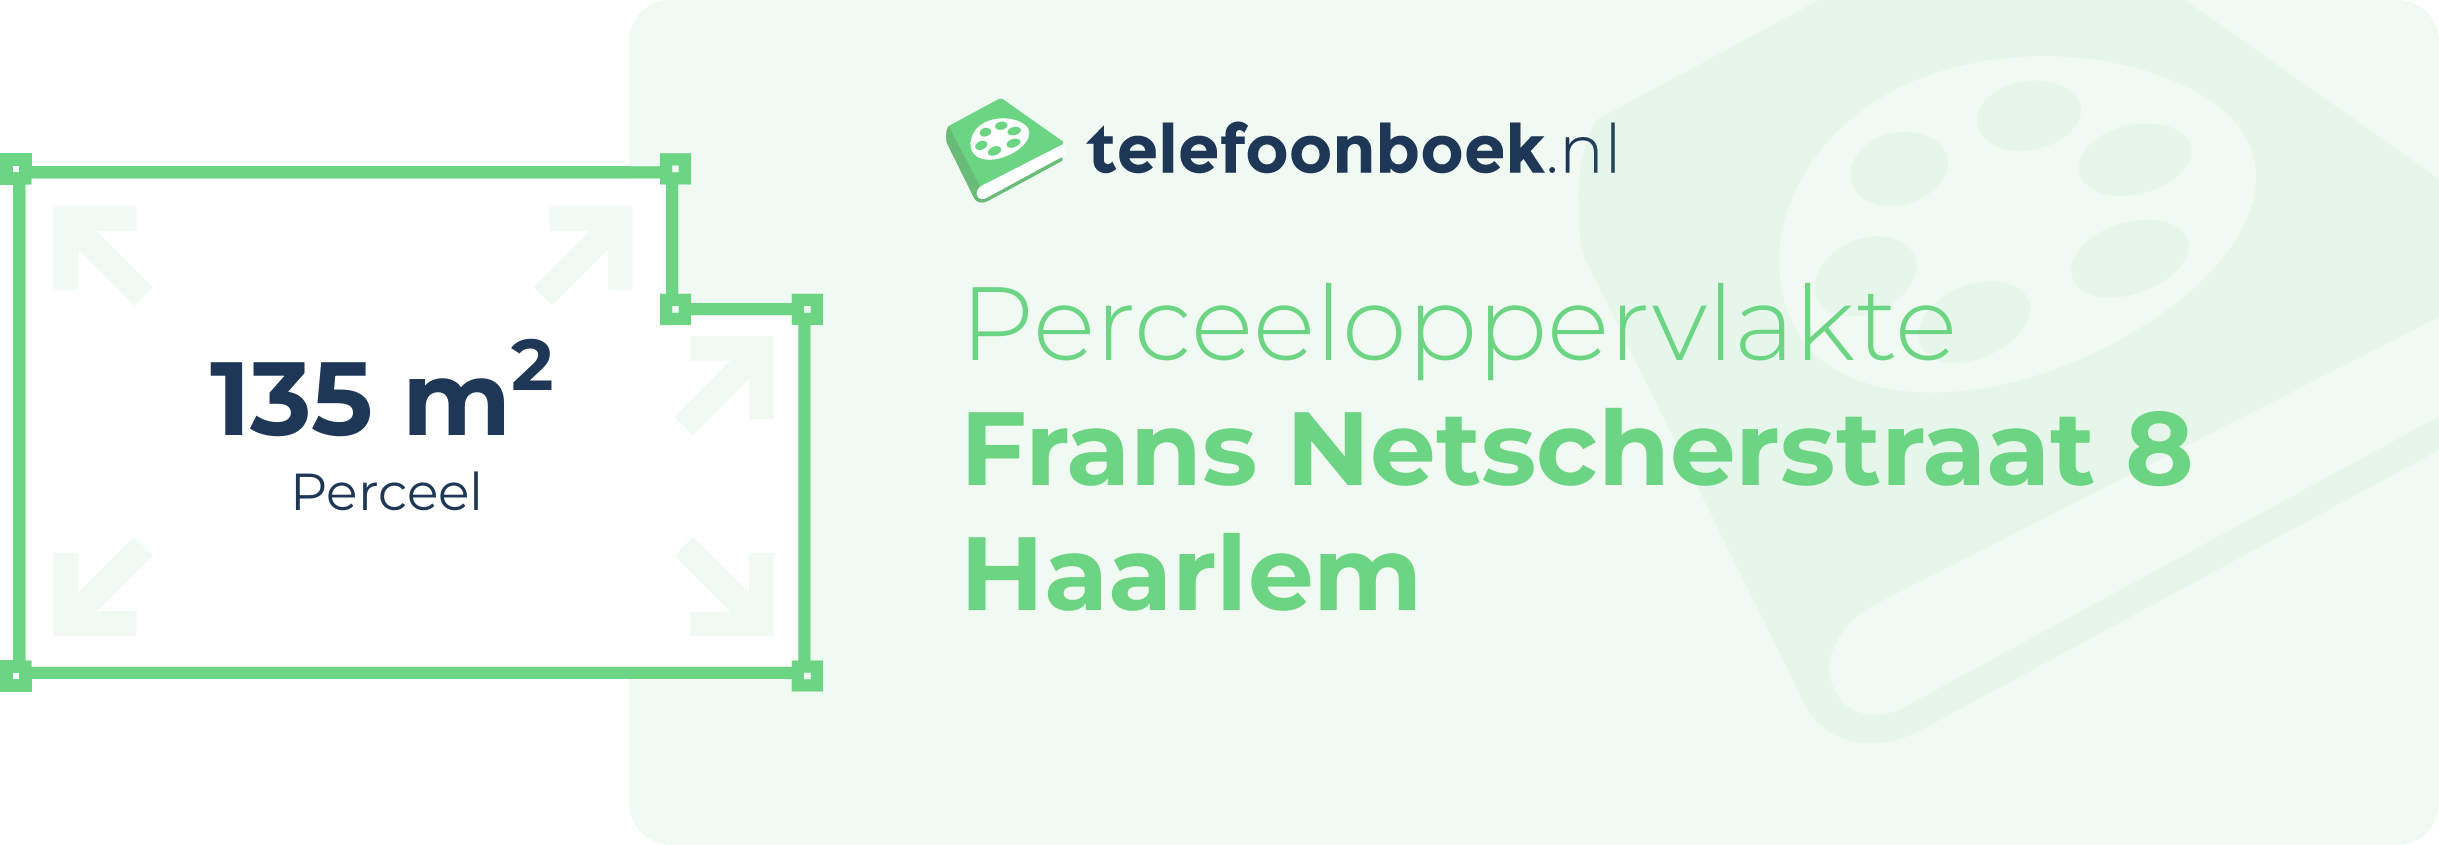 Perceeloppervlakte Frans Netscherstraat 8 Haarlem